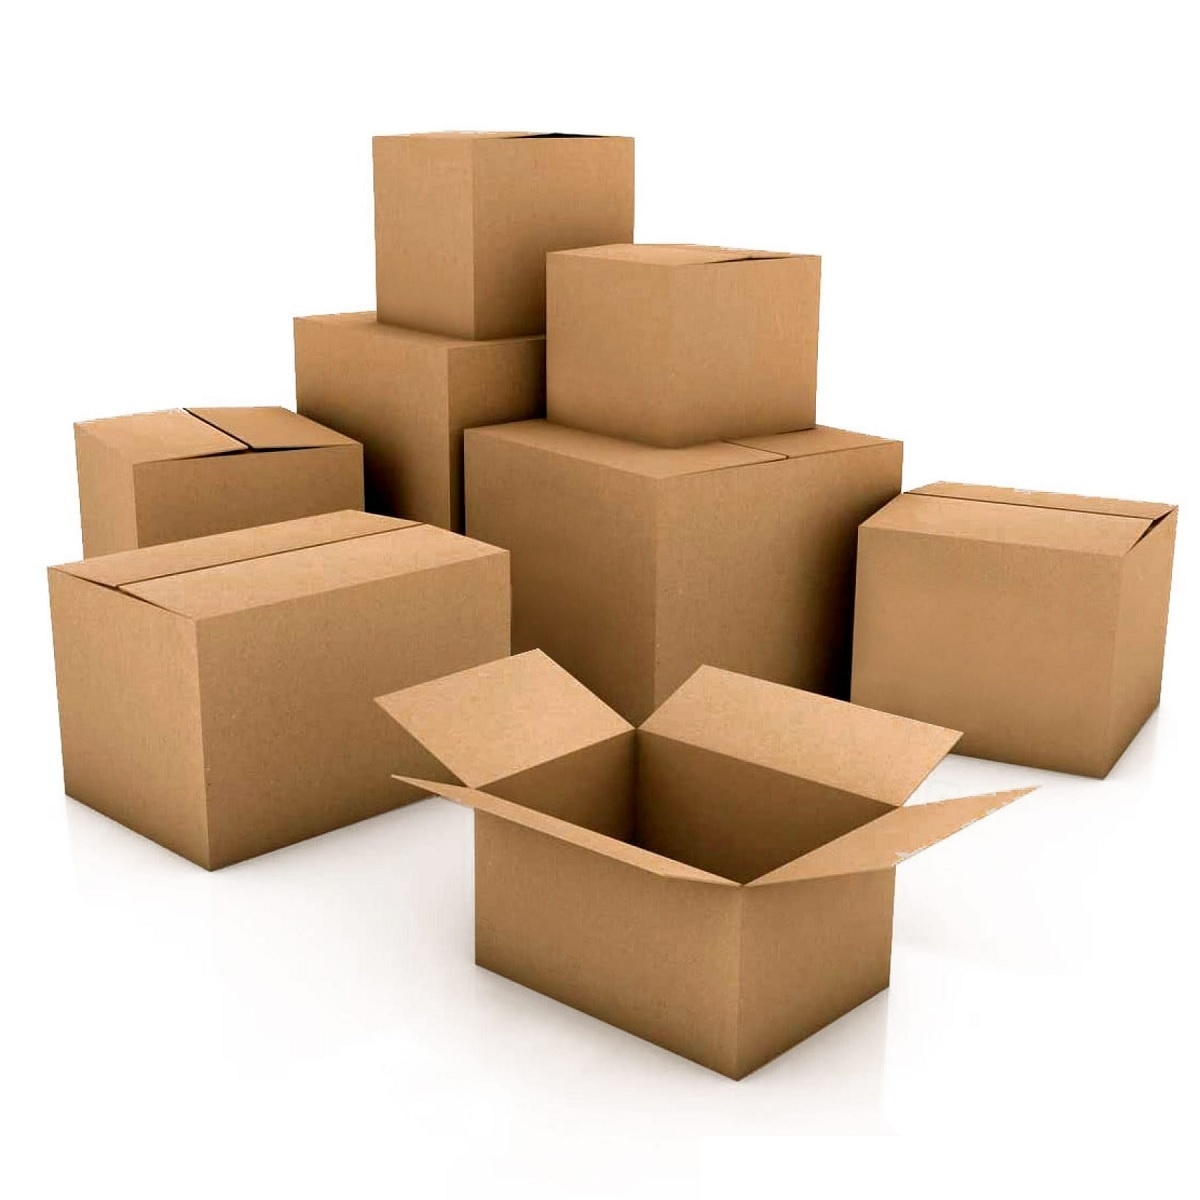 aankunnen Baffle Verstelbaar Verpakkingen kopen? Bestel online - VerpakkingenXL